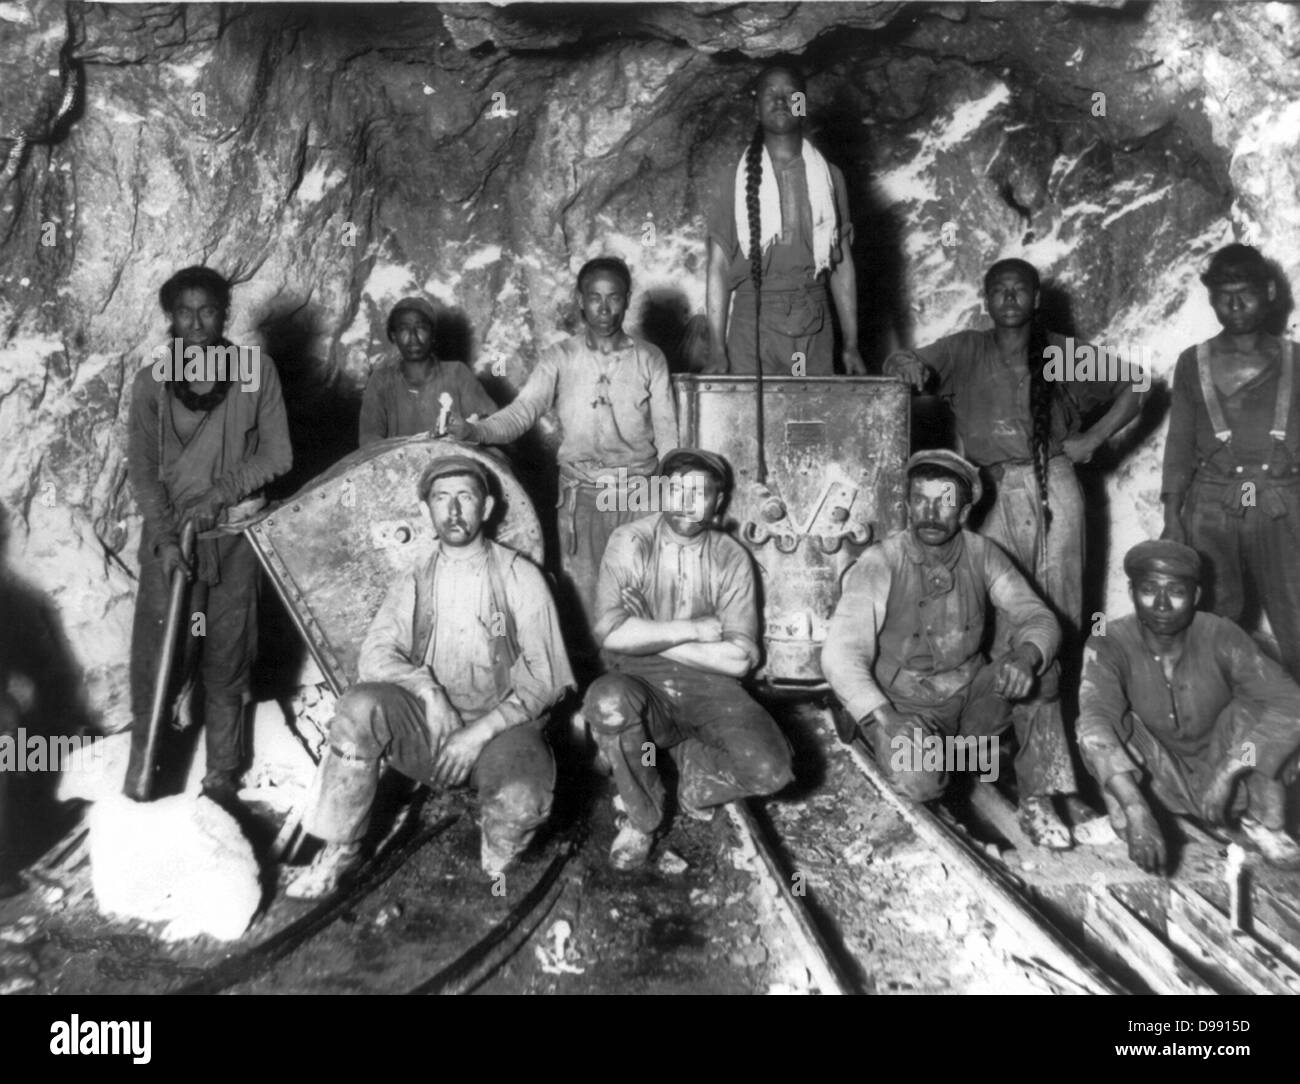 Schwarz, Chinesisch und weiß Arbeiter in einer Goldmine in Südafrika, 1900. Stockfoto